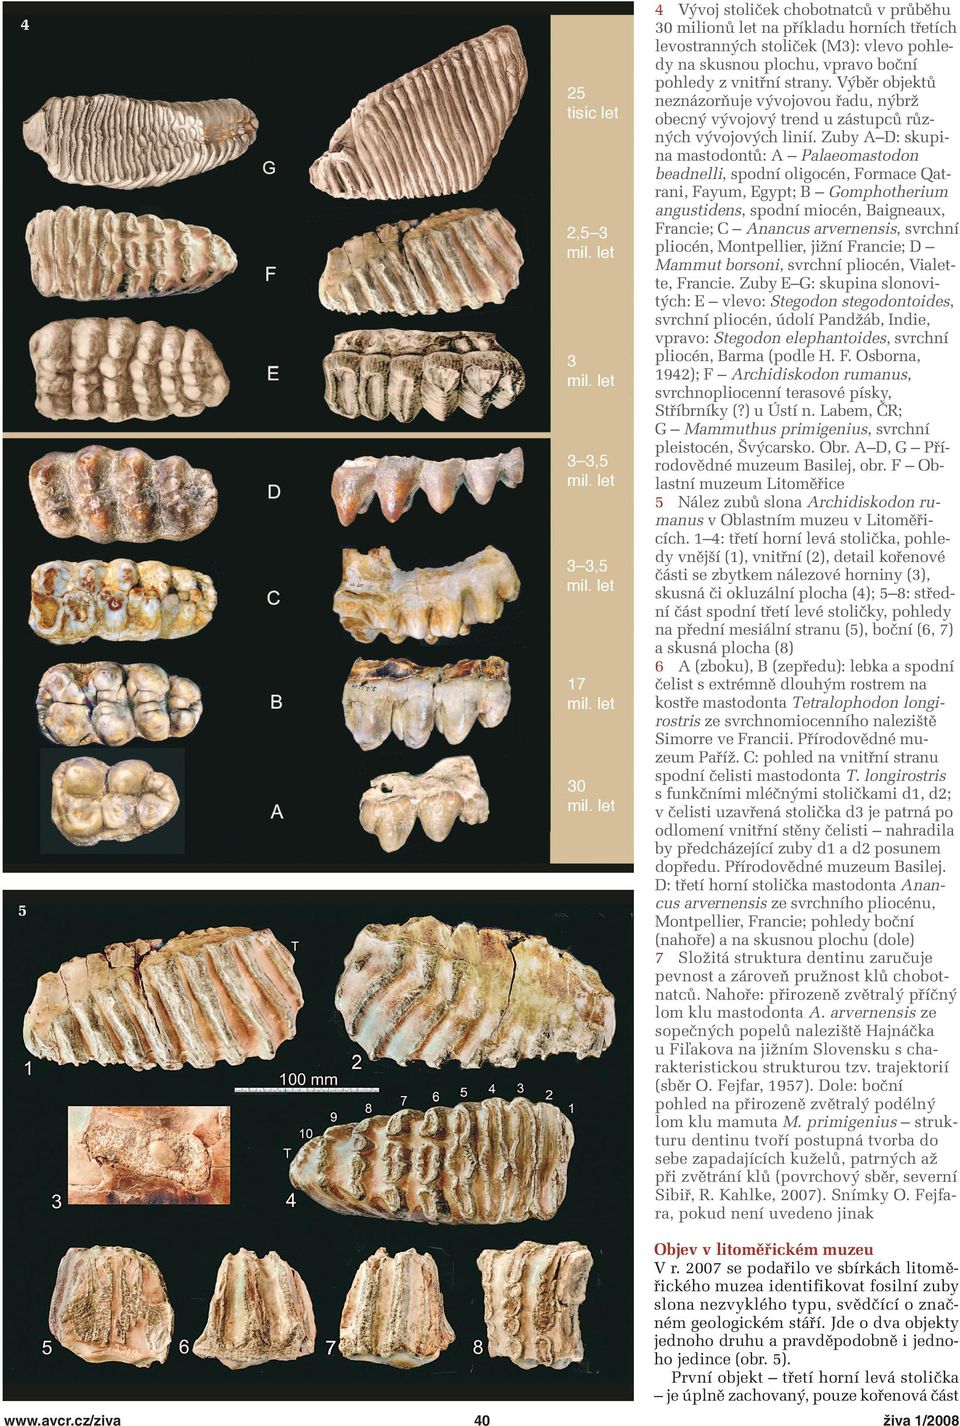 Zuby A D: skupina mastodontů: A Palaeomastodon beadnelli, spodní oligocén, Formace Qatrani, Fayum, Egypt; B Gomphotherium angustidens, spodní miocén, Baigneaux, Francie; C Anancus arvernensis,